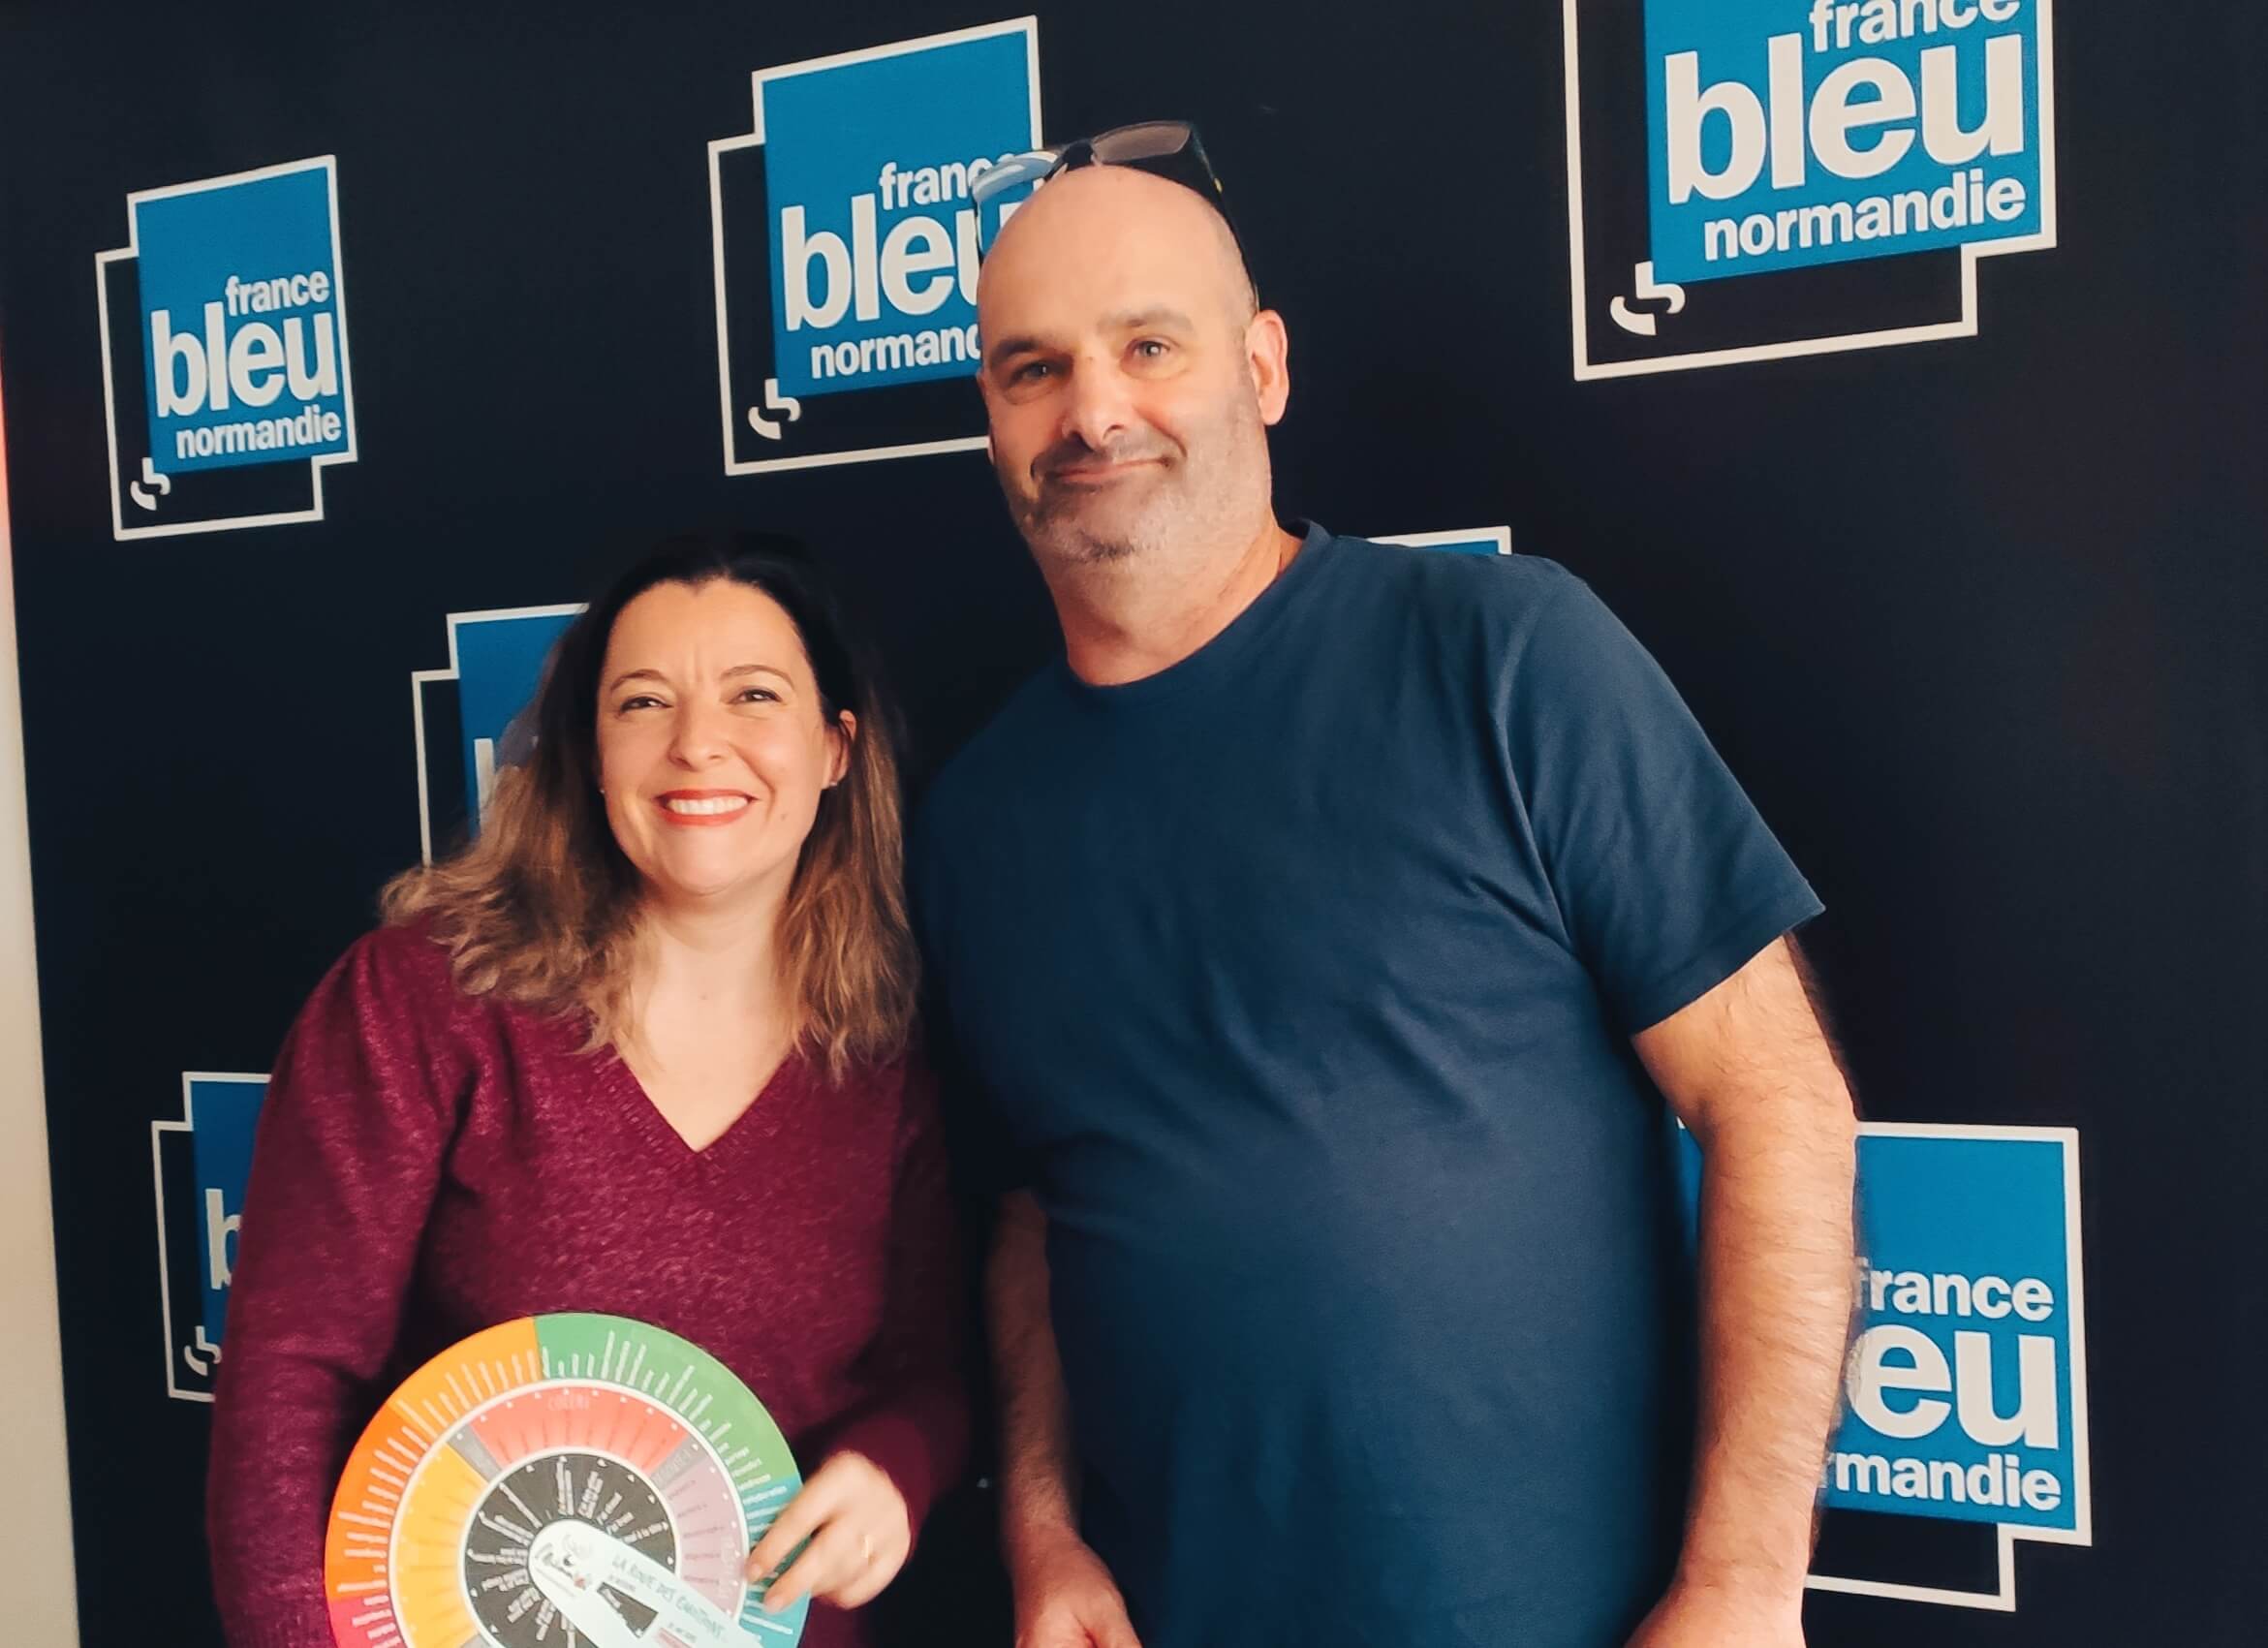 Brunet Adeline avec Eric Valle pour une émission de radio sur France Bleu Normandie